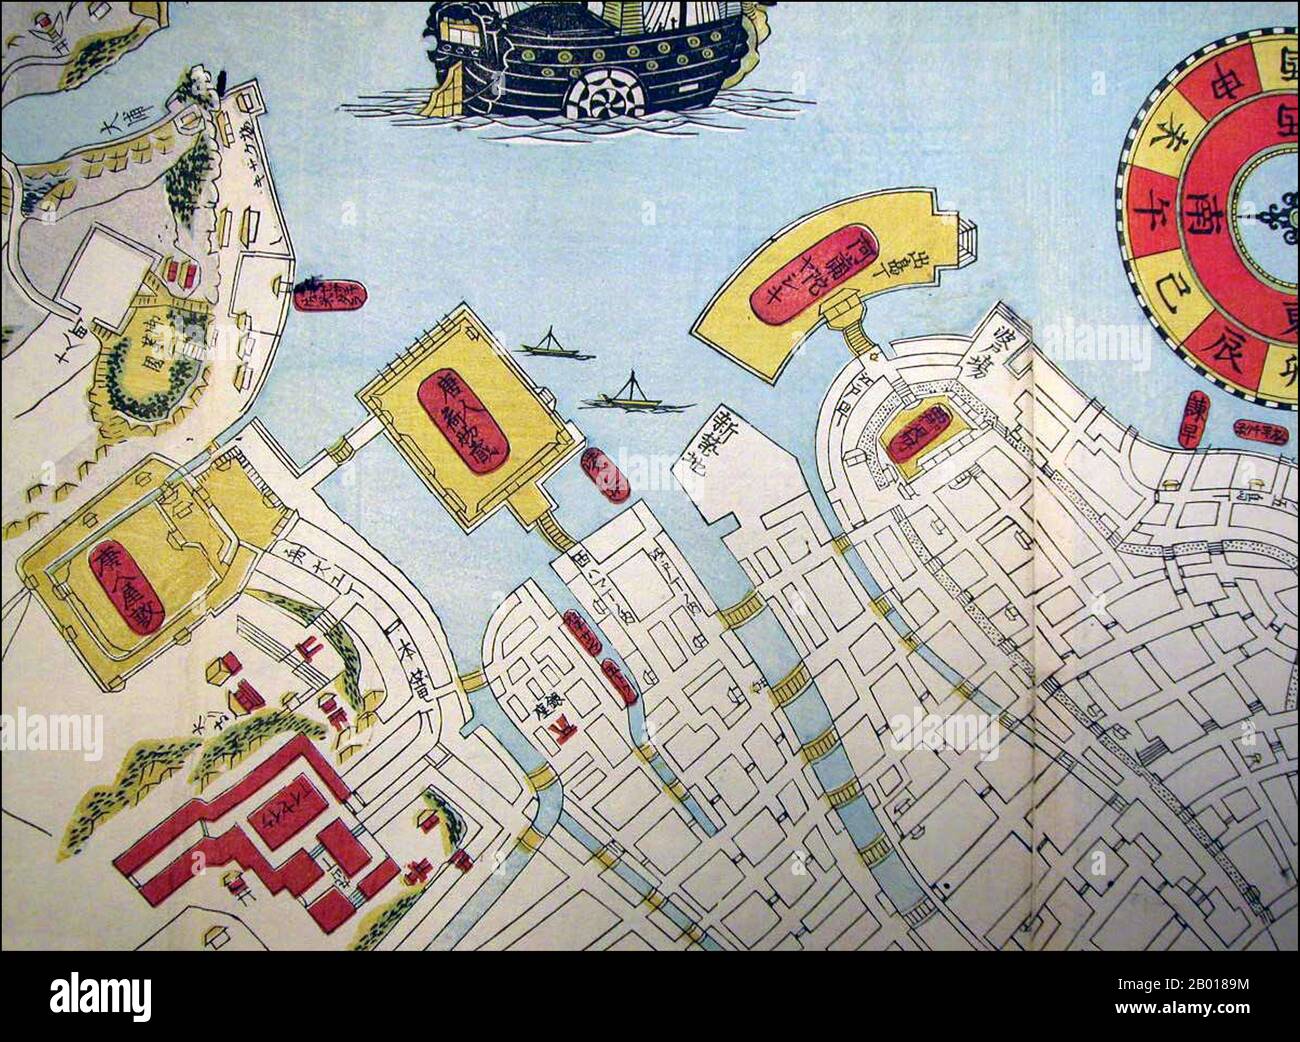 Japón: Un mapa del puerto de Nagasaki que muestra la isla de Dejima y el cercano complejo de comerciantes chinos, a finales del siglo 19th. Dejima (literalmente 'isla de salida'; holandés: Desjima o Deshima, algunas veces latinizado como Decima o Dezima) fue una pequeña isla artificial en forma de abanico construida en la bahía de Nagasaki en 1634. Esta isla, formada por la excavación de un canal a través de una pequeña península, permaneció como único lugar de comercio directo e intercambio entre Japón y el mundo exterior durante el período Edo. Dejima fue construido para restringir a los comerciantes extranjeros como parte de la política aislacionista autoimpuesta de 'sakoku'. Foto de stock